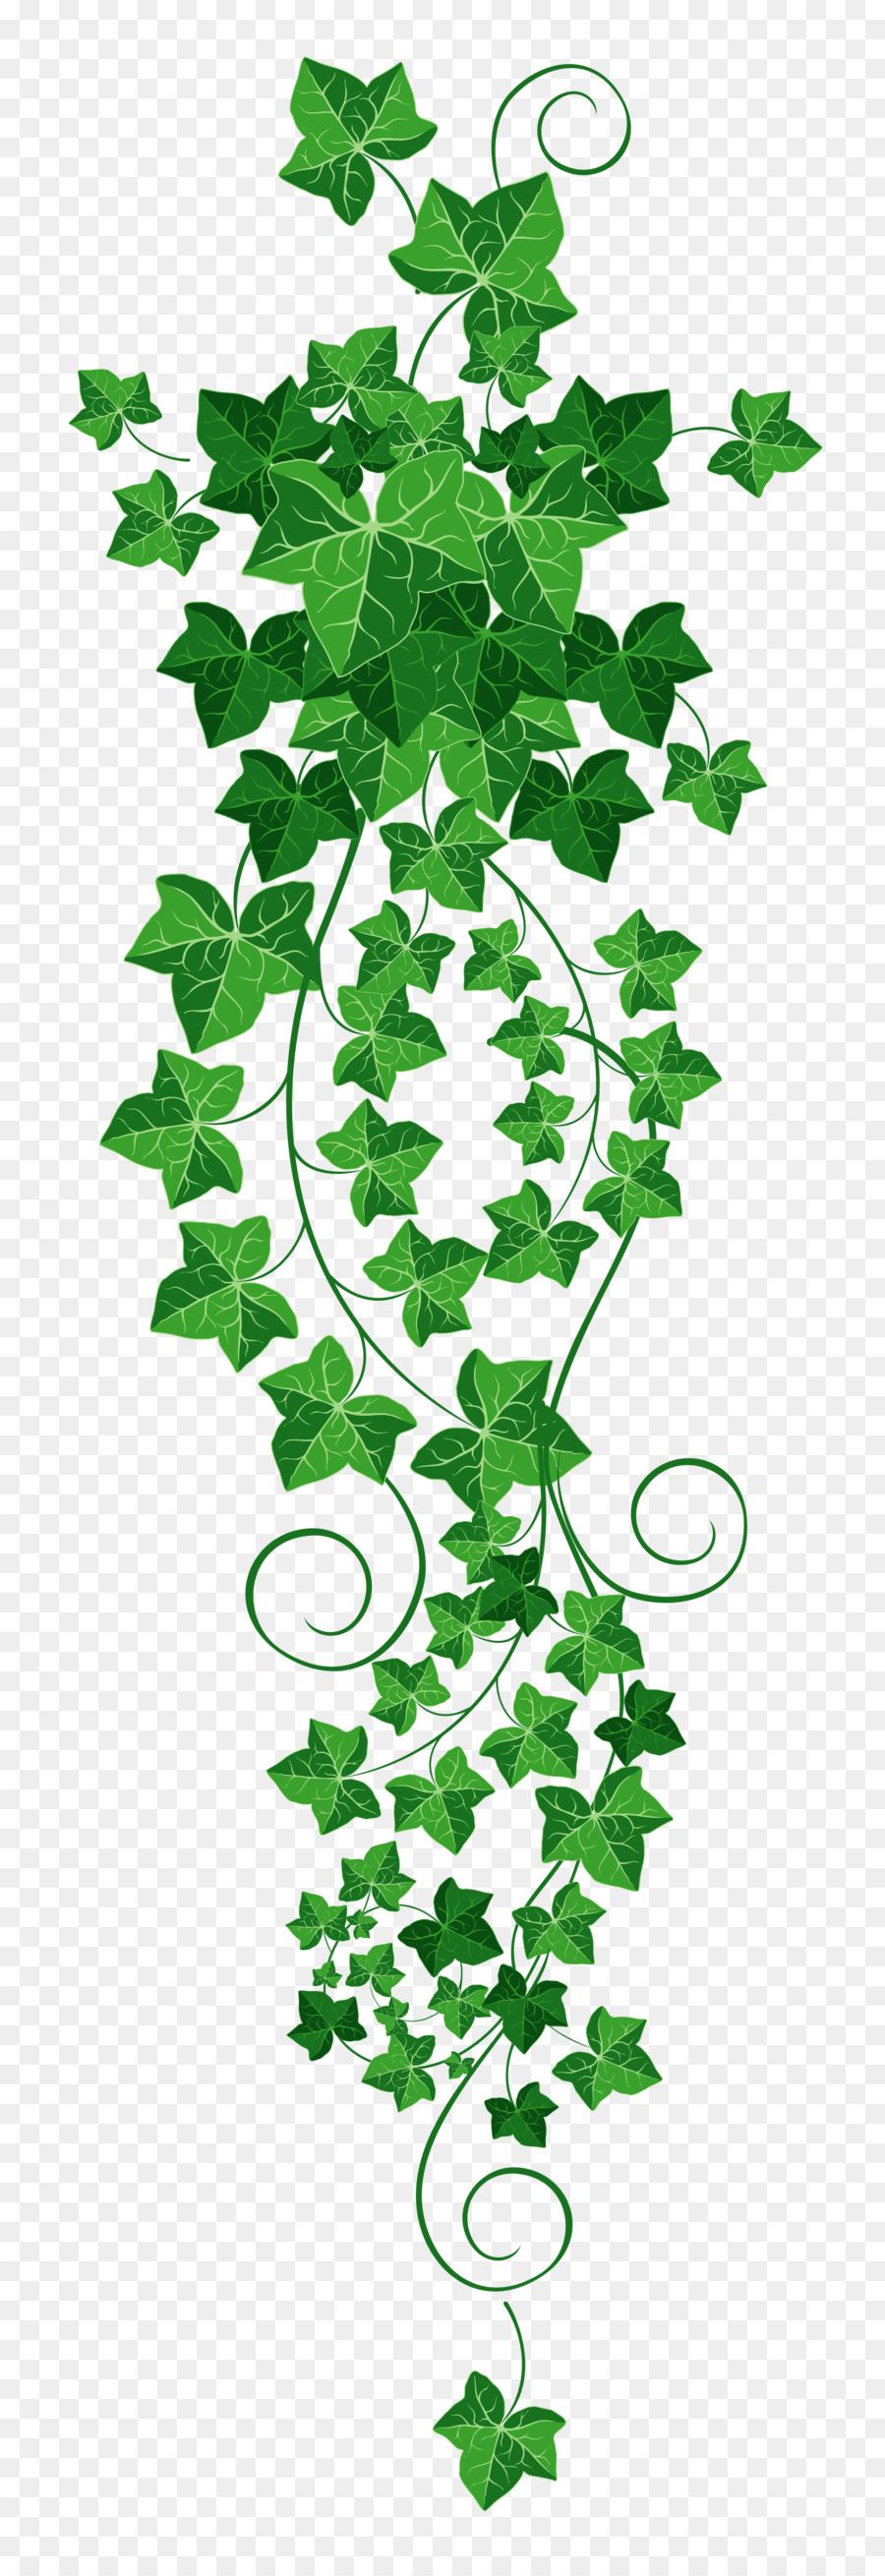 Ivy Vine Clip art - vines png download - 1795*5209 - Free Transparent Ivy png Download.